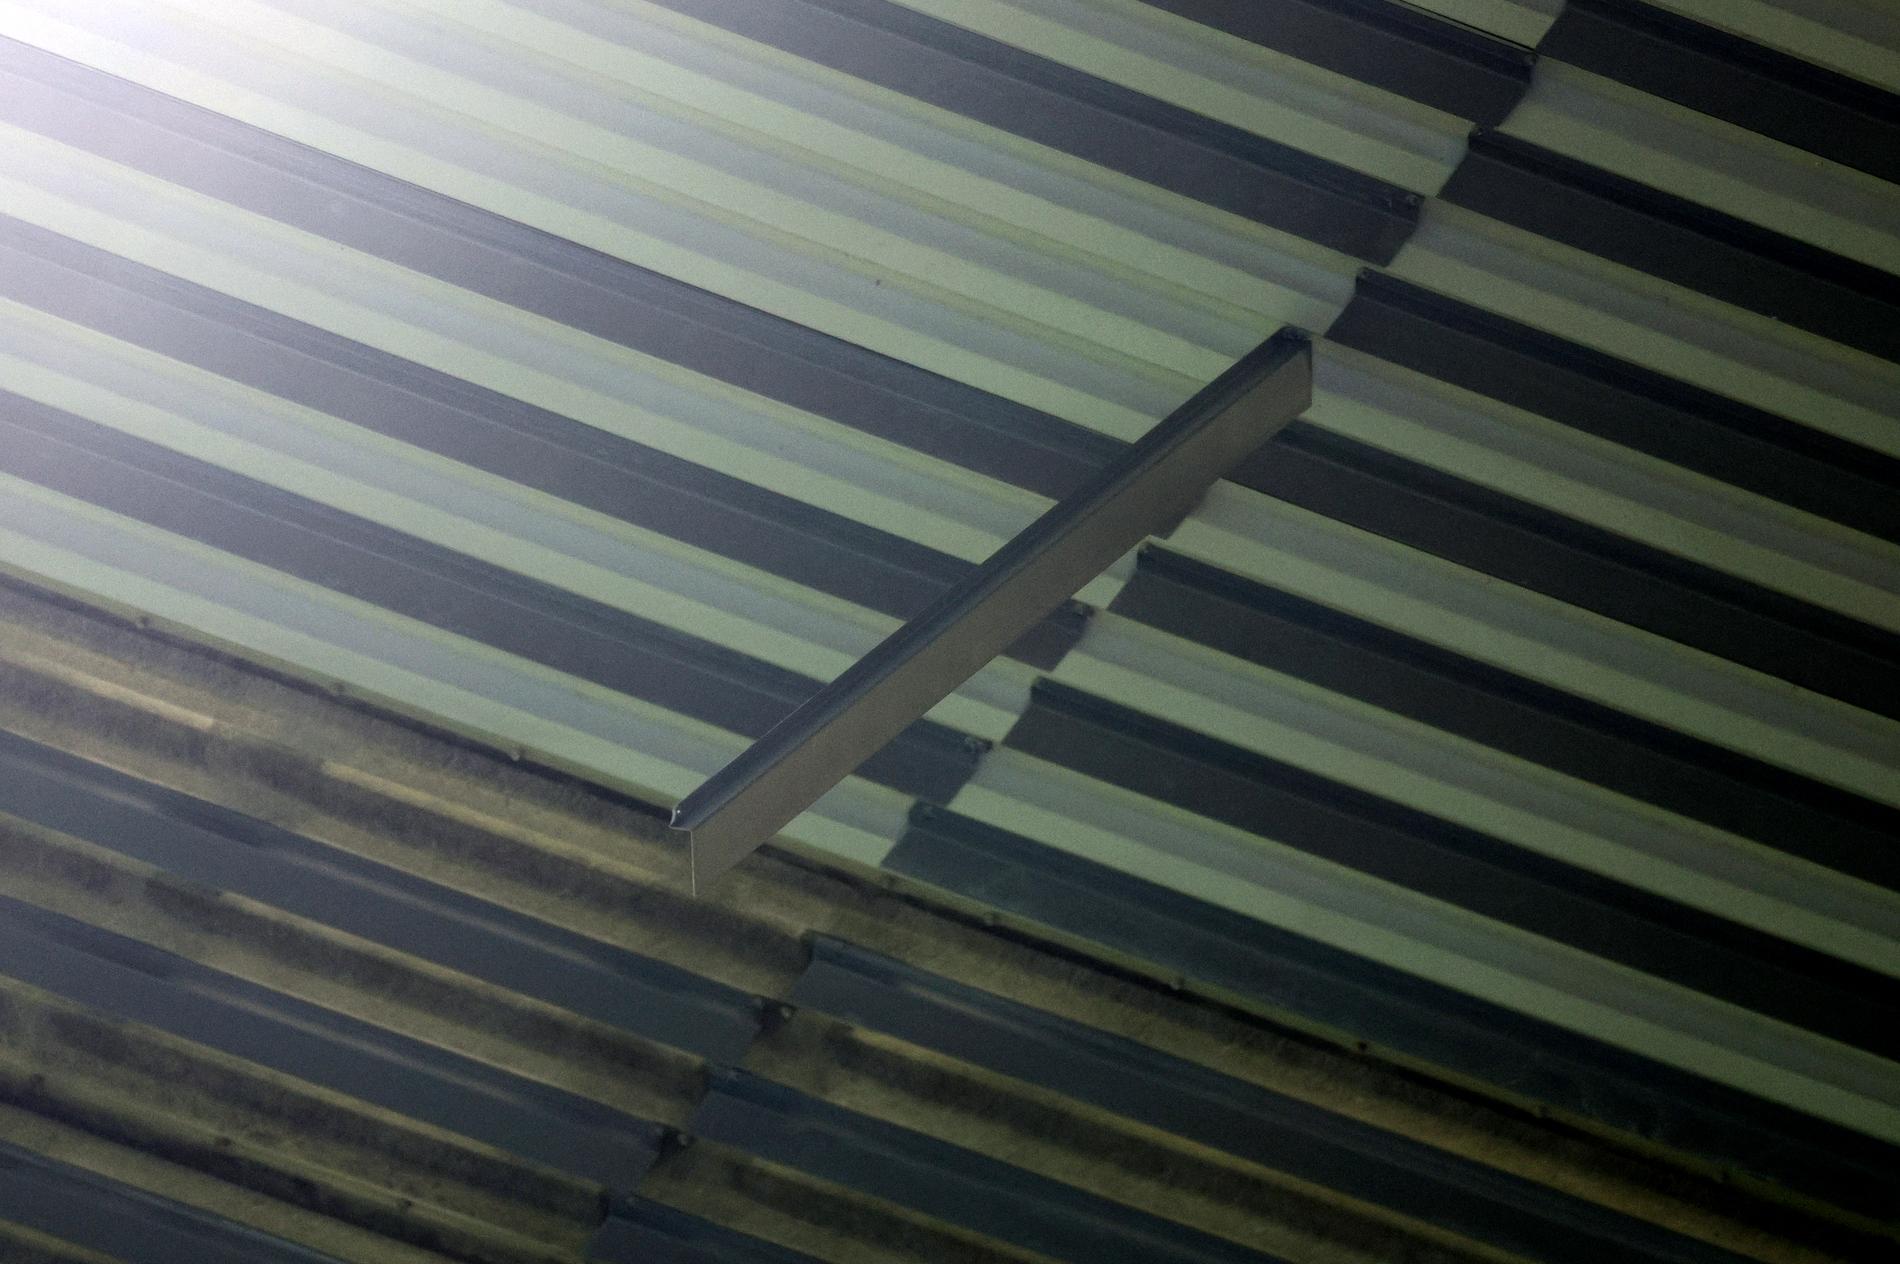 Metallbitar hänger löst från taket.